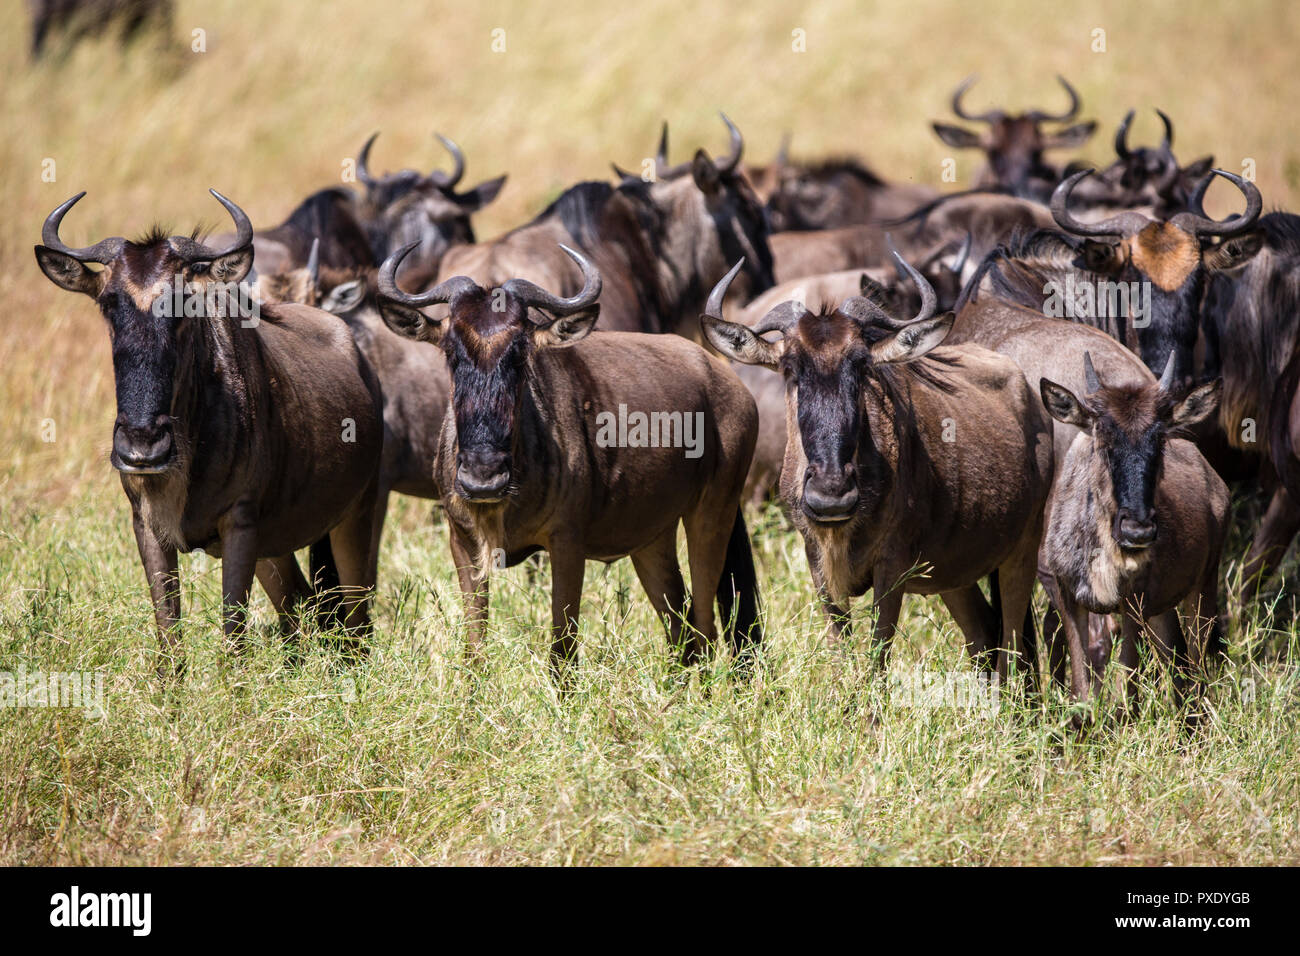 Gran migración de los ñus en el Parque Nacional del Serengeti, Tanzania Foto de stock